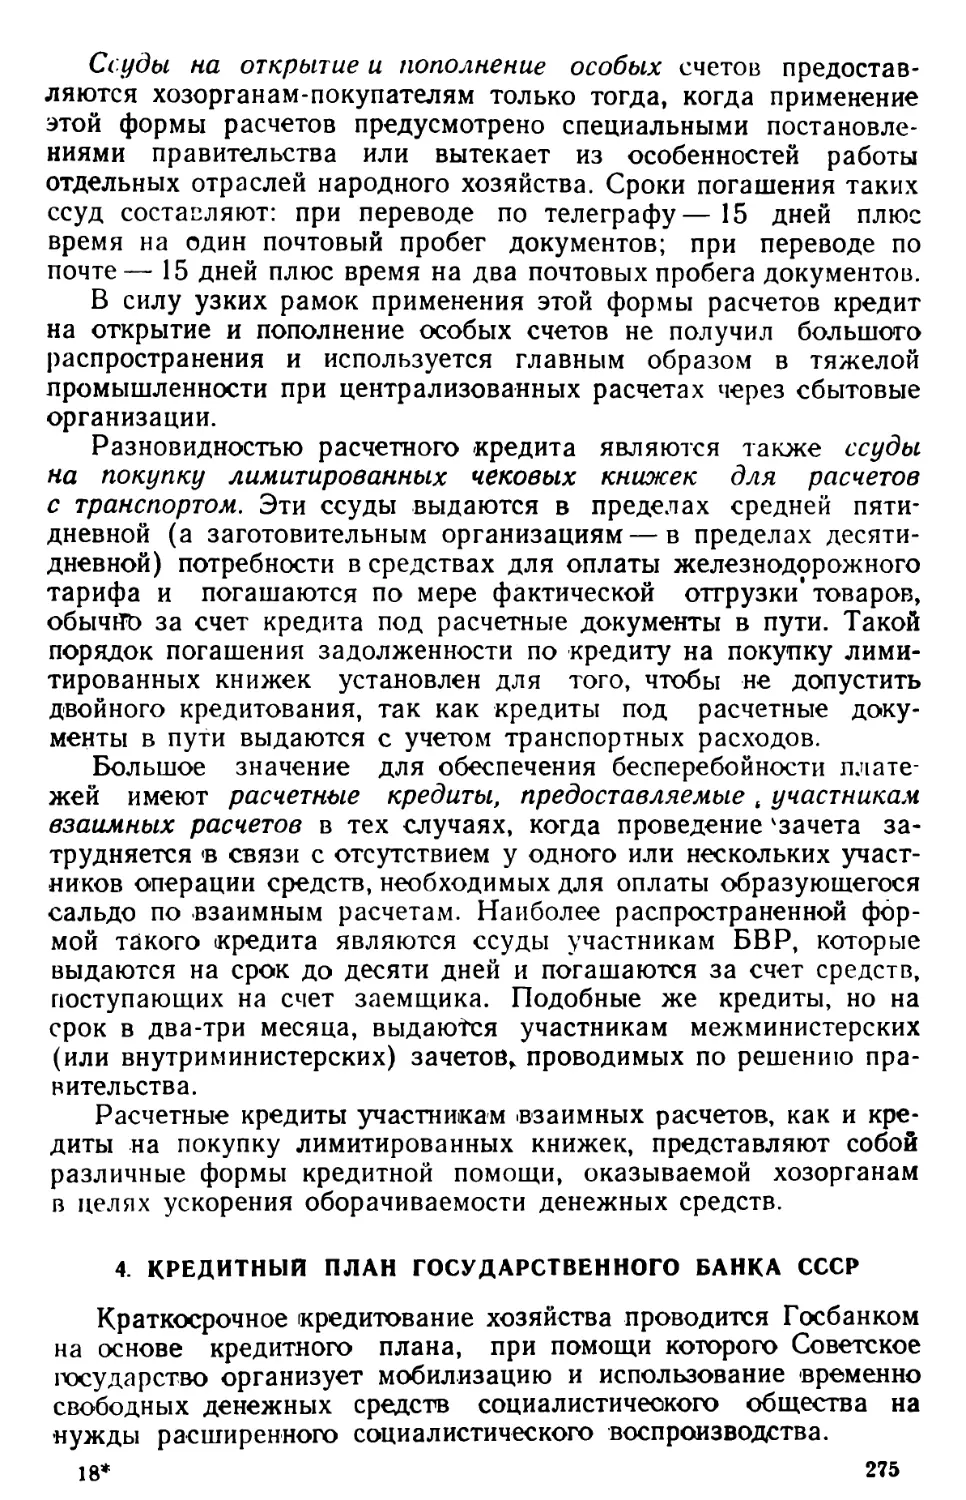 4. Кредитный план Государственного банка СССР